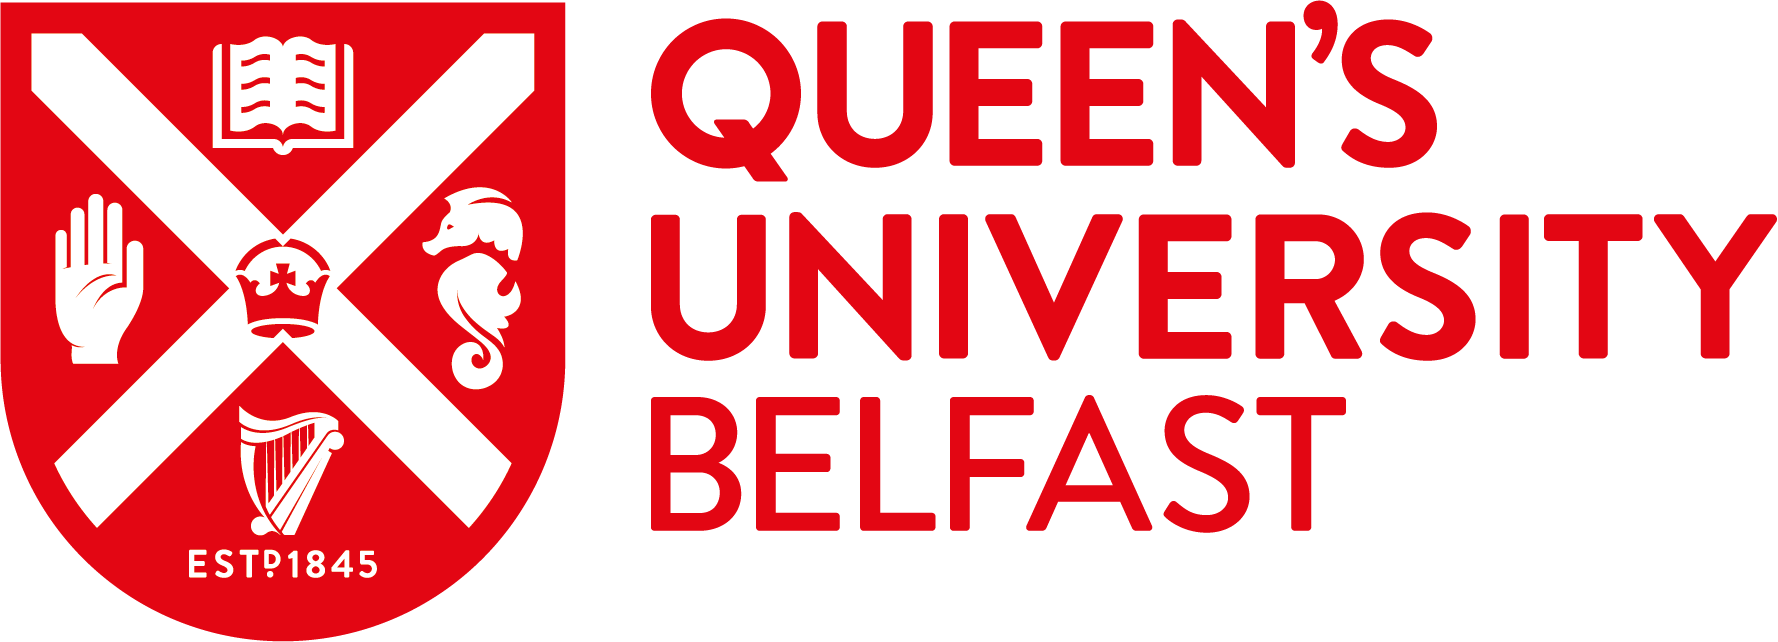 Queen's_university_belfast_logo